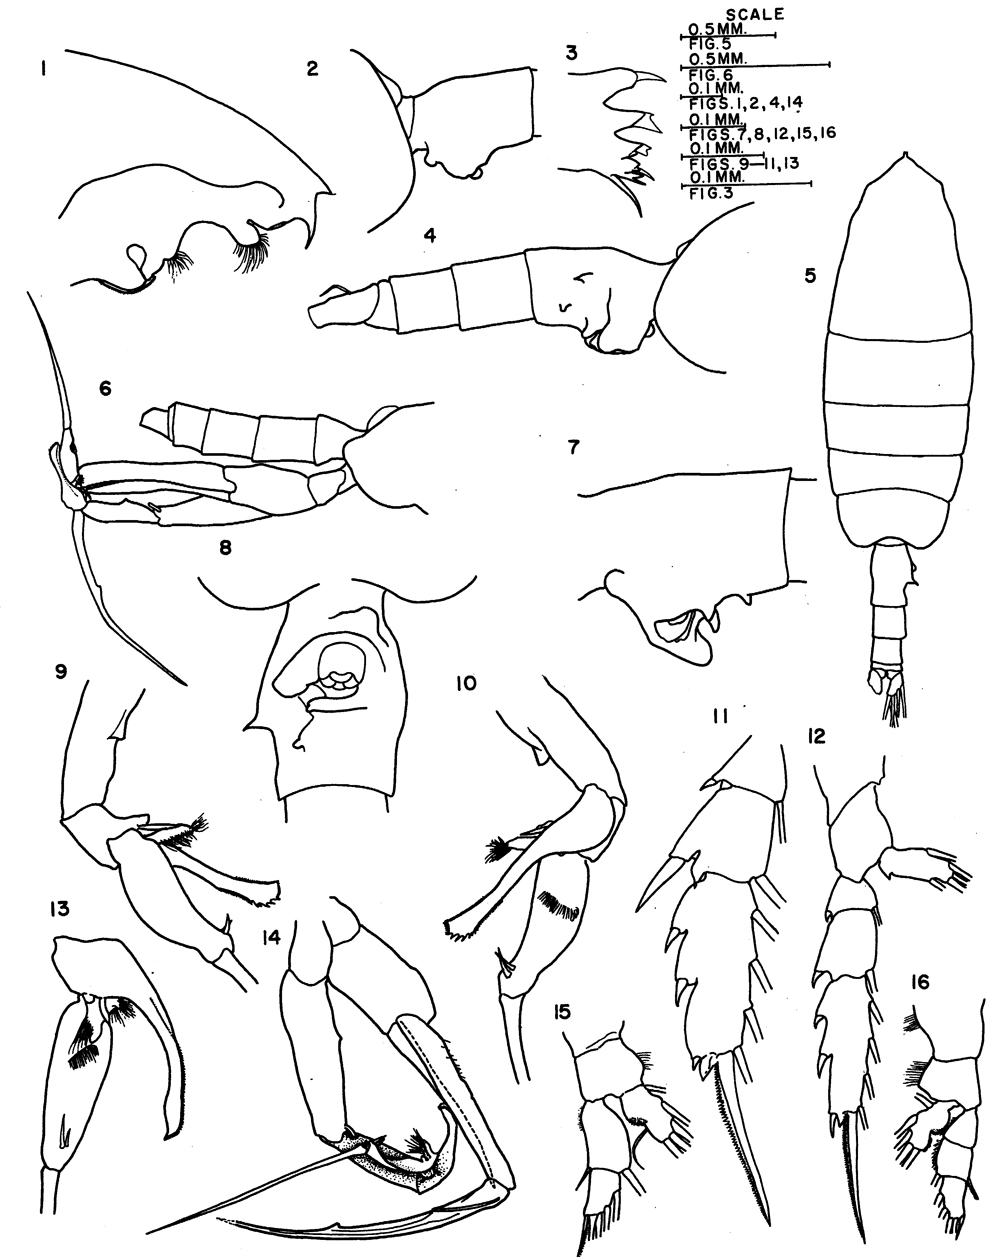 Espce Euchaeta paraconcinna - Planche 3 de figures morphologiques